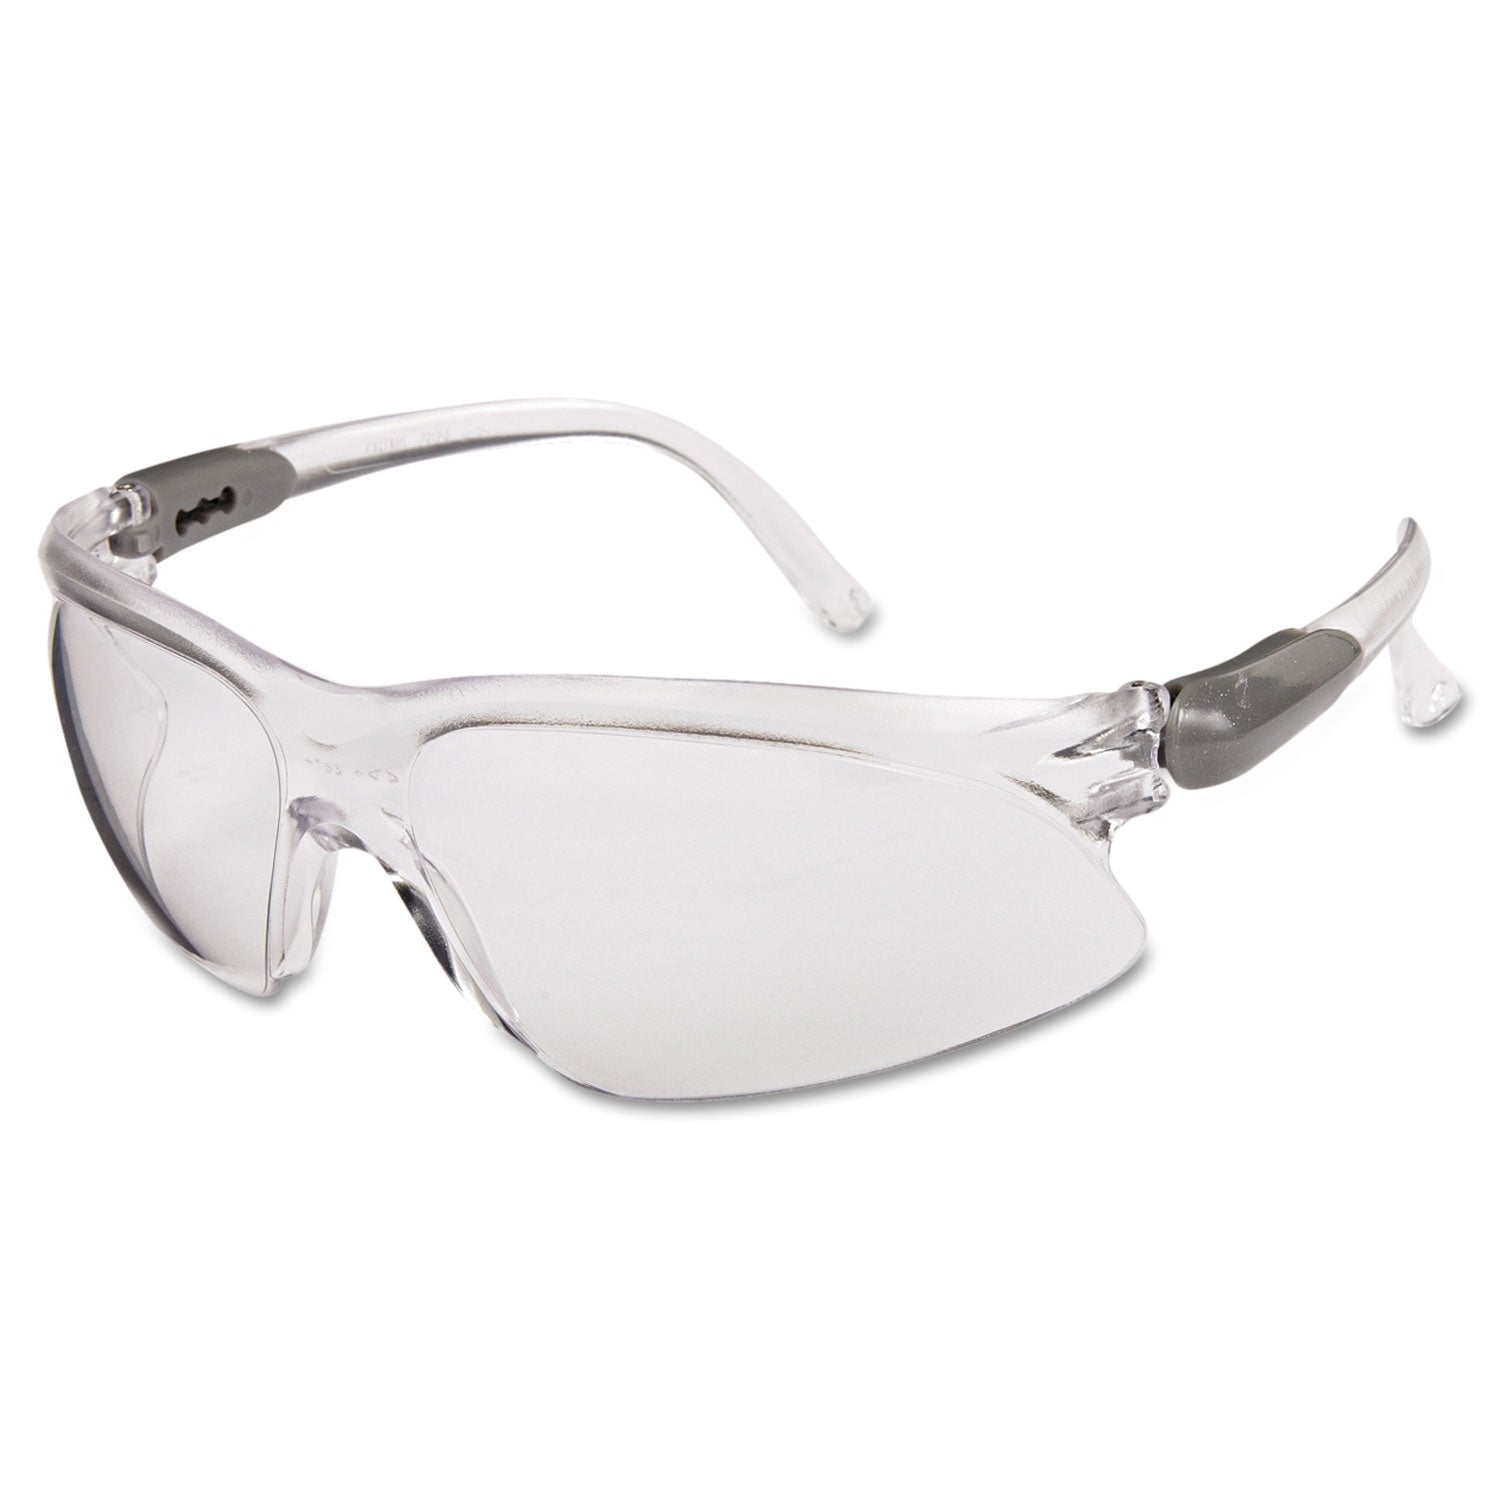 v20-visio-safety-eyewear-clear-lens-foggard-plus_kcc14471 - 1